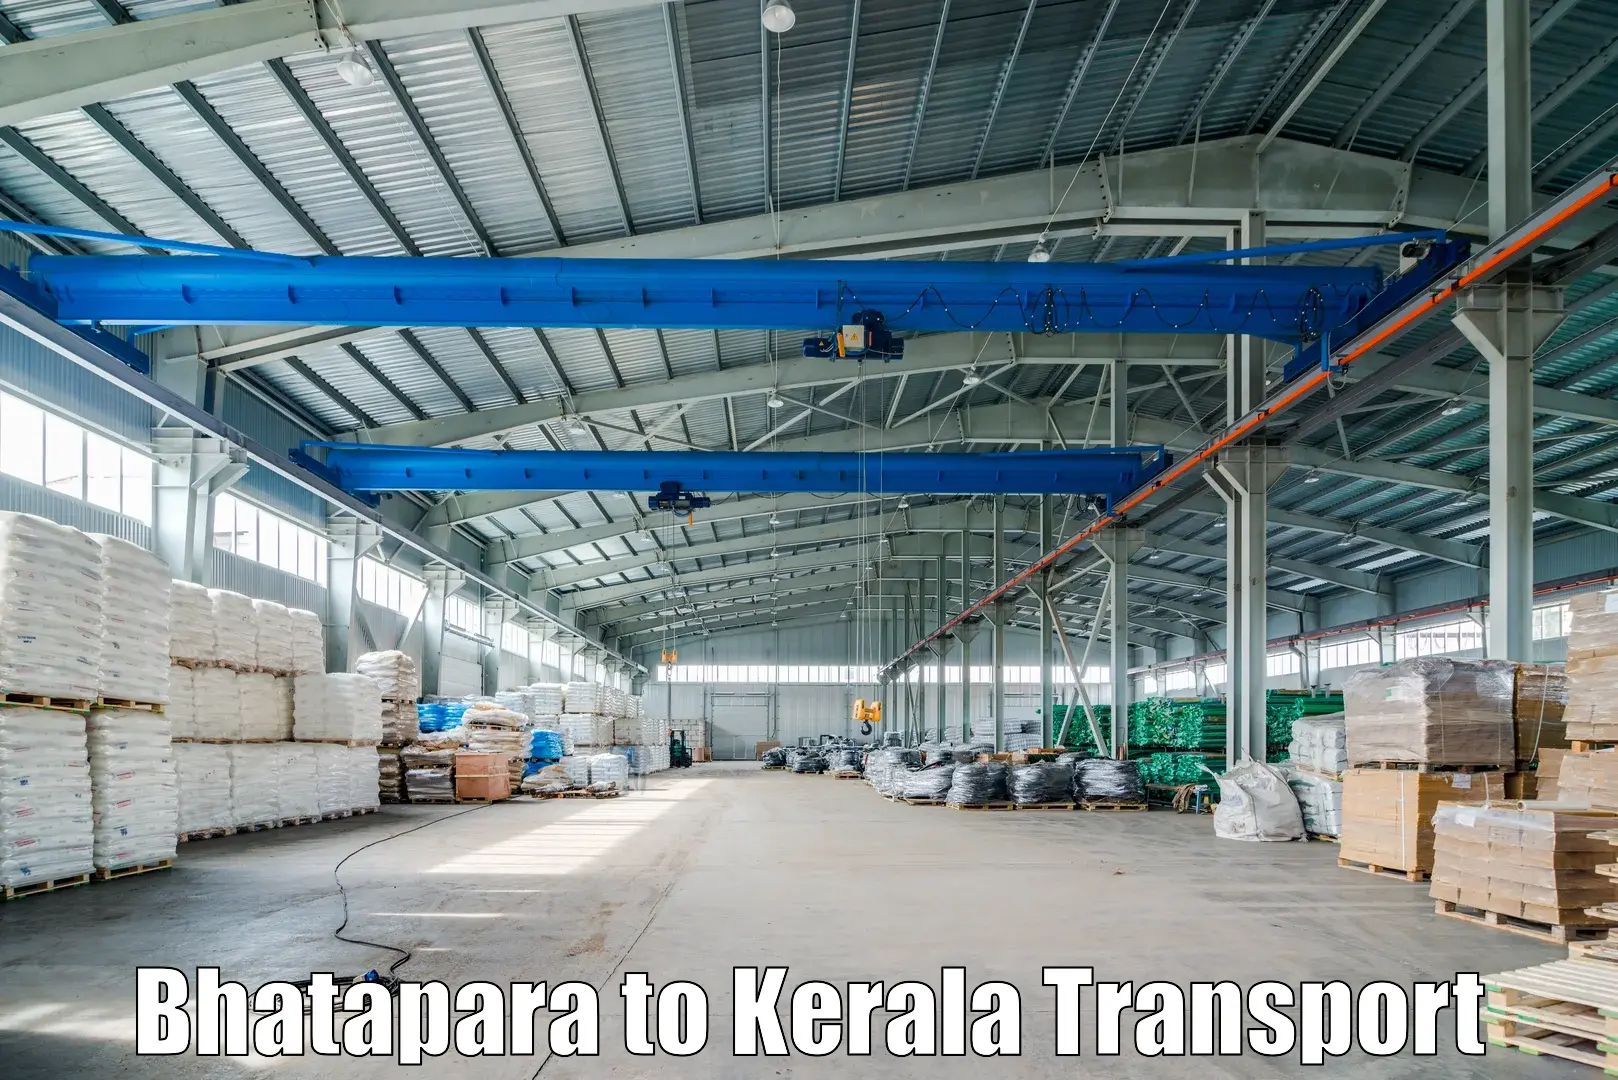 Truck transport companies in India Bhatapara to Nedumangad